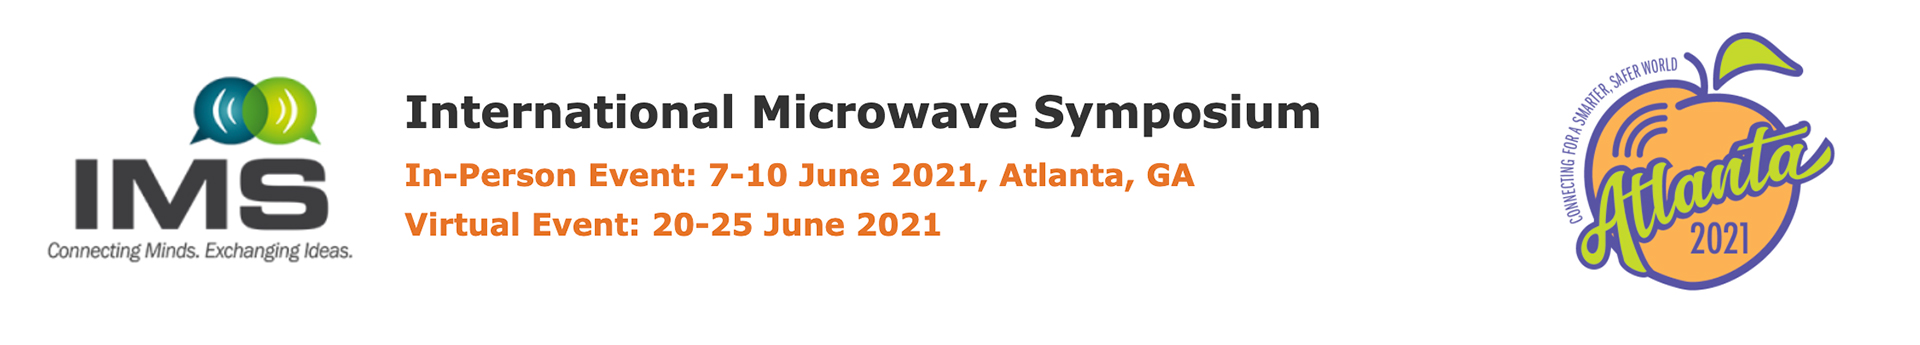 International Microwave Symposium (IMS) 2021